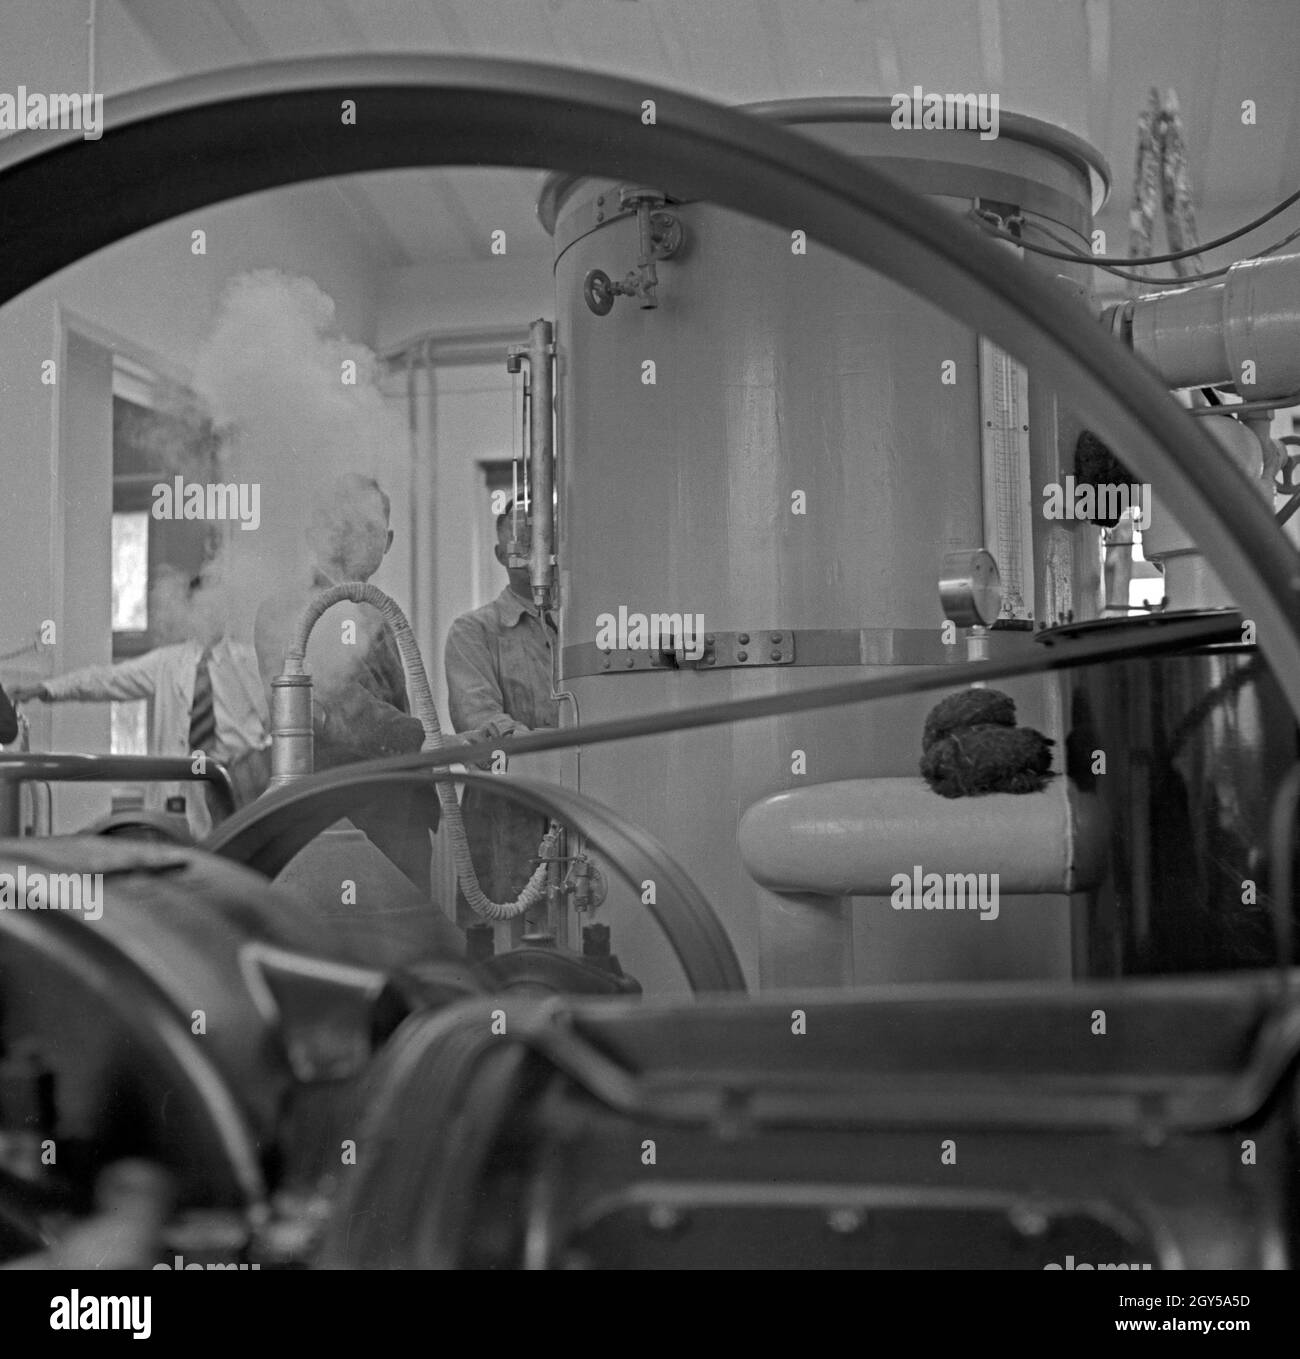 Im Maschnenraum des Kaiser-Wilhelm-Instituts für Physik in Berlin Dahlem, 1930er Jahre. Am Motor Unit der Kaiser-Wilhelm-Institut in Berlin Dahlem, 1930er Jahre. Stockfoto